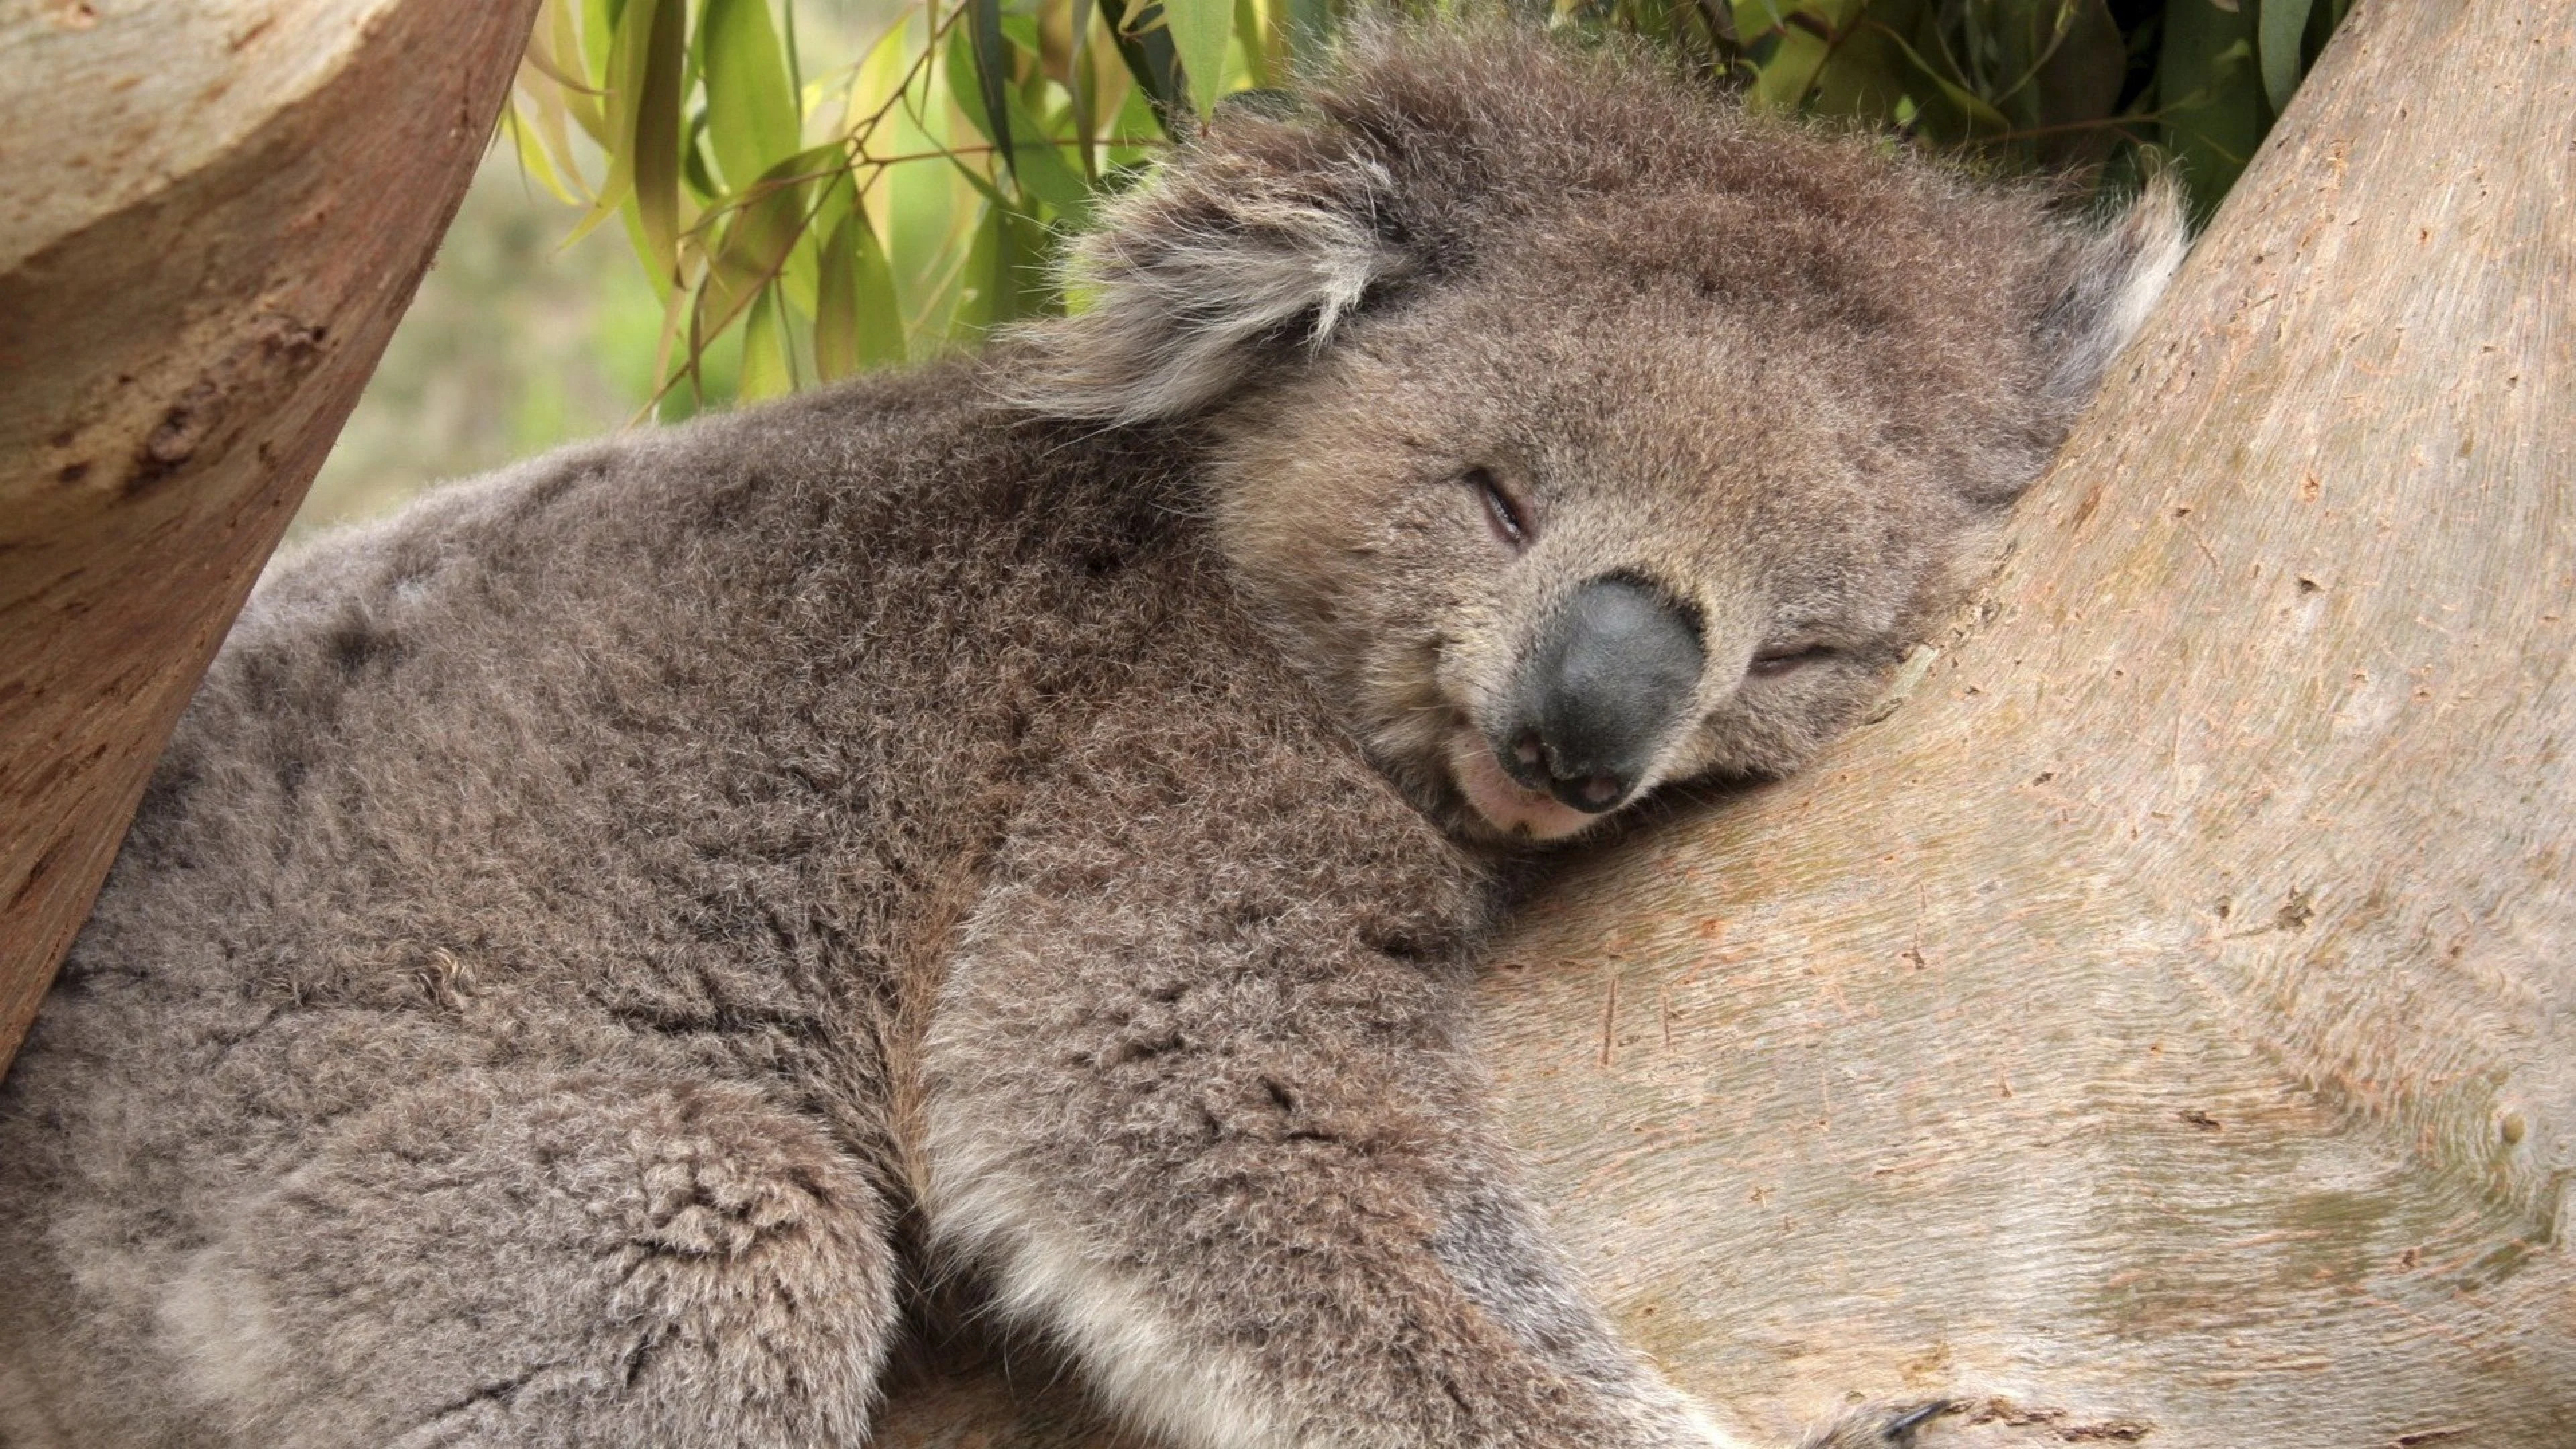 Sleeping koala bears, Peaceful slumber, Dreaming in trees, Koala snooze, 3840x2160 4K Desktop